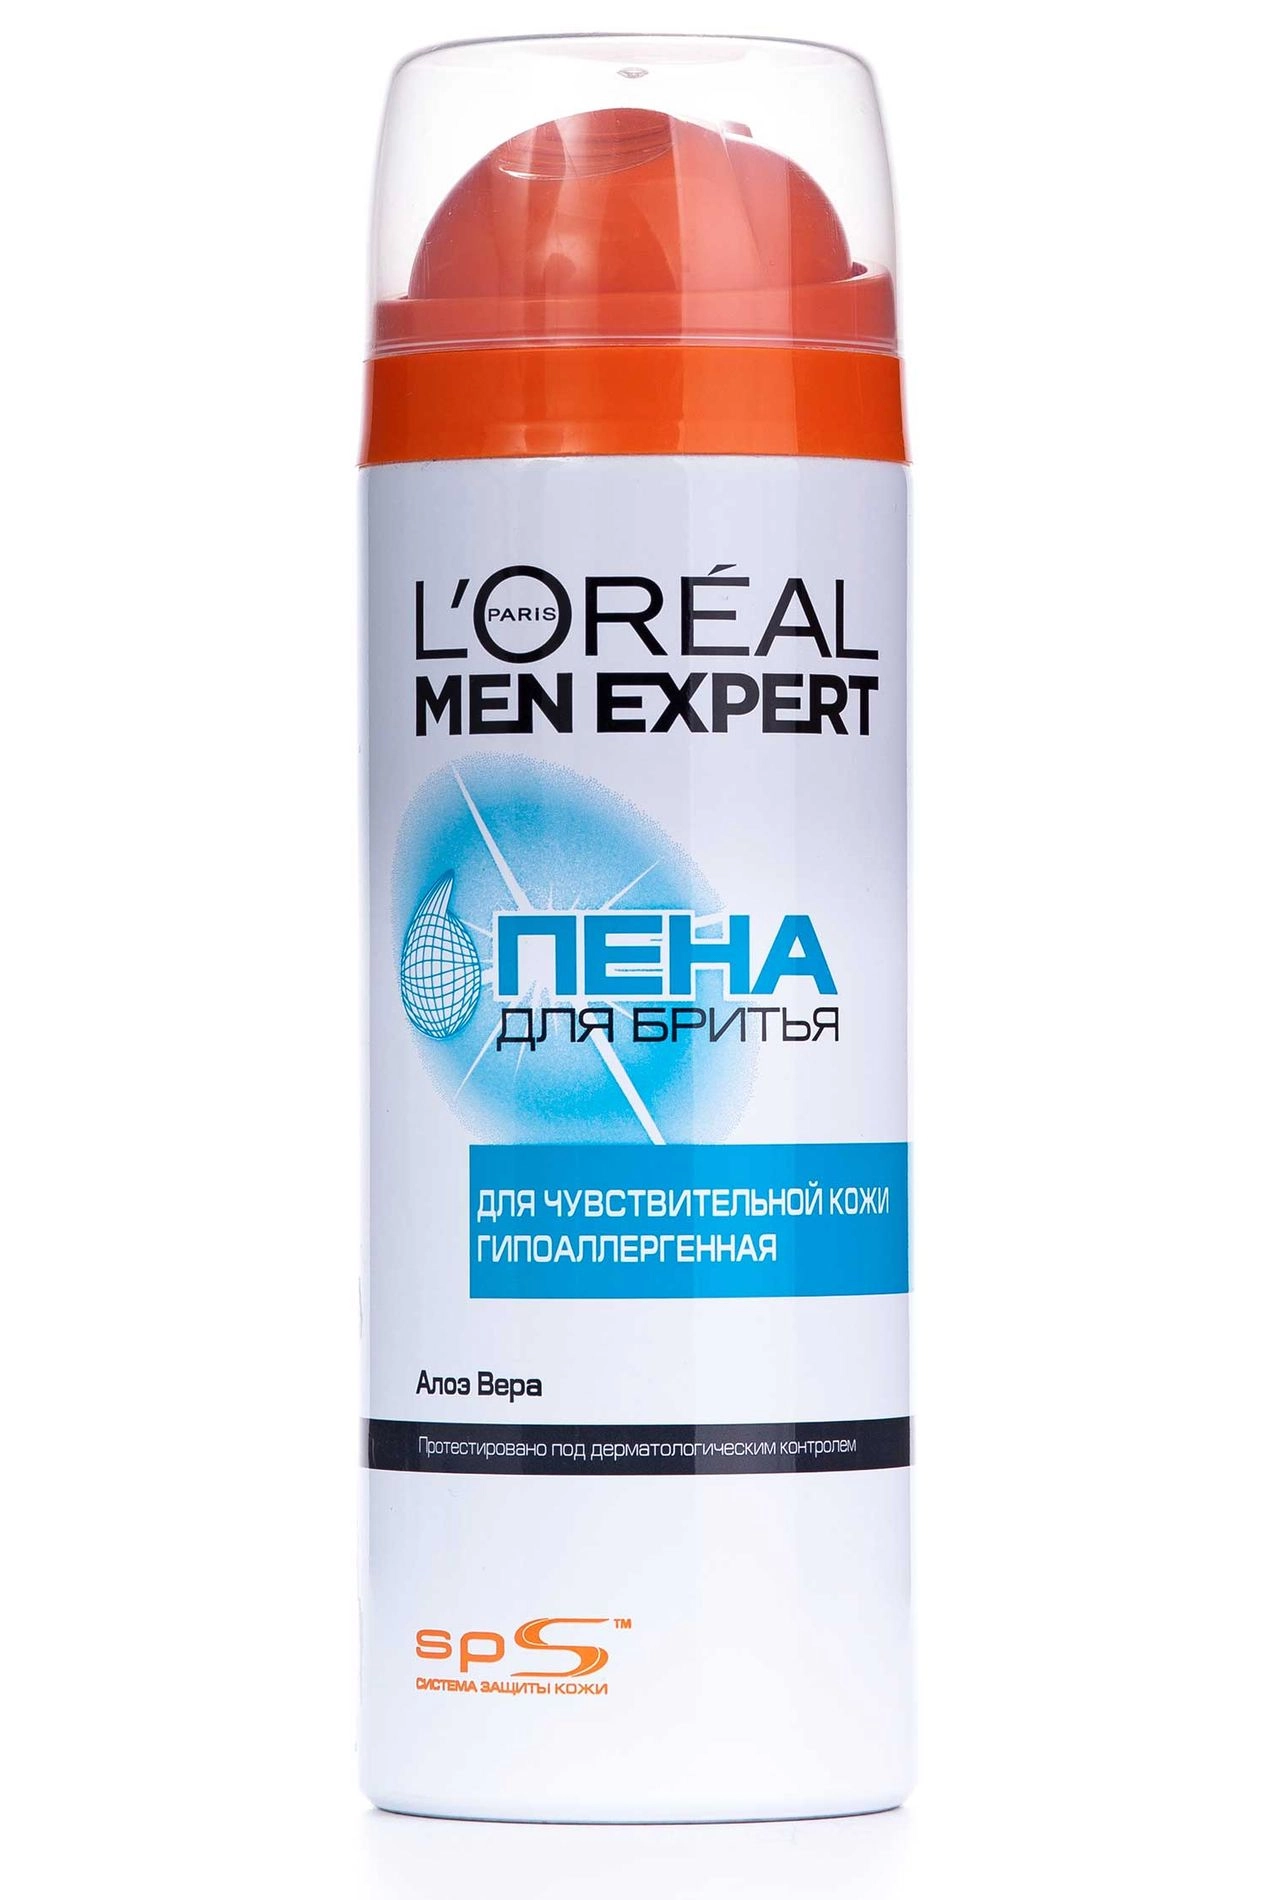 L’Oreal Paris Пена для бритья L'oreal Men Expert мужская для чувствительной кожи, 200мл - фото N1